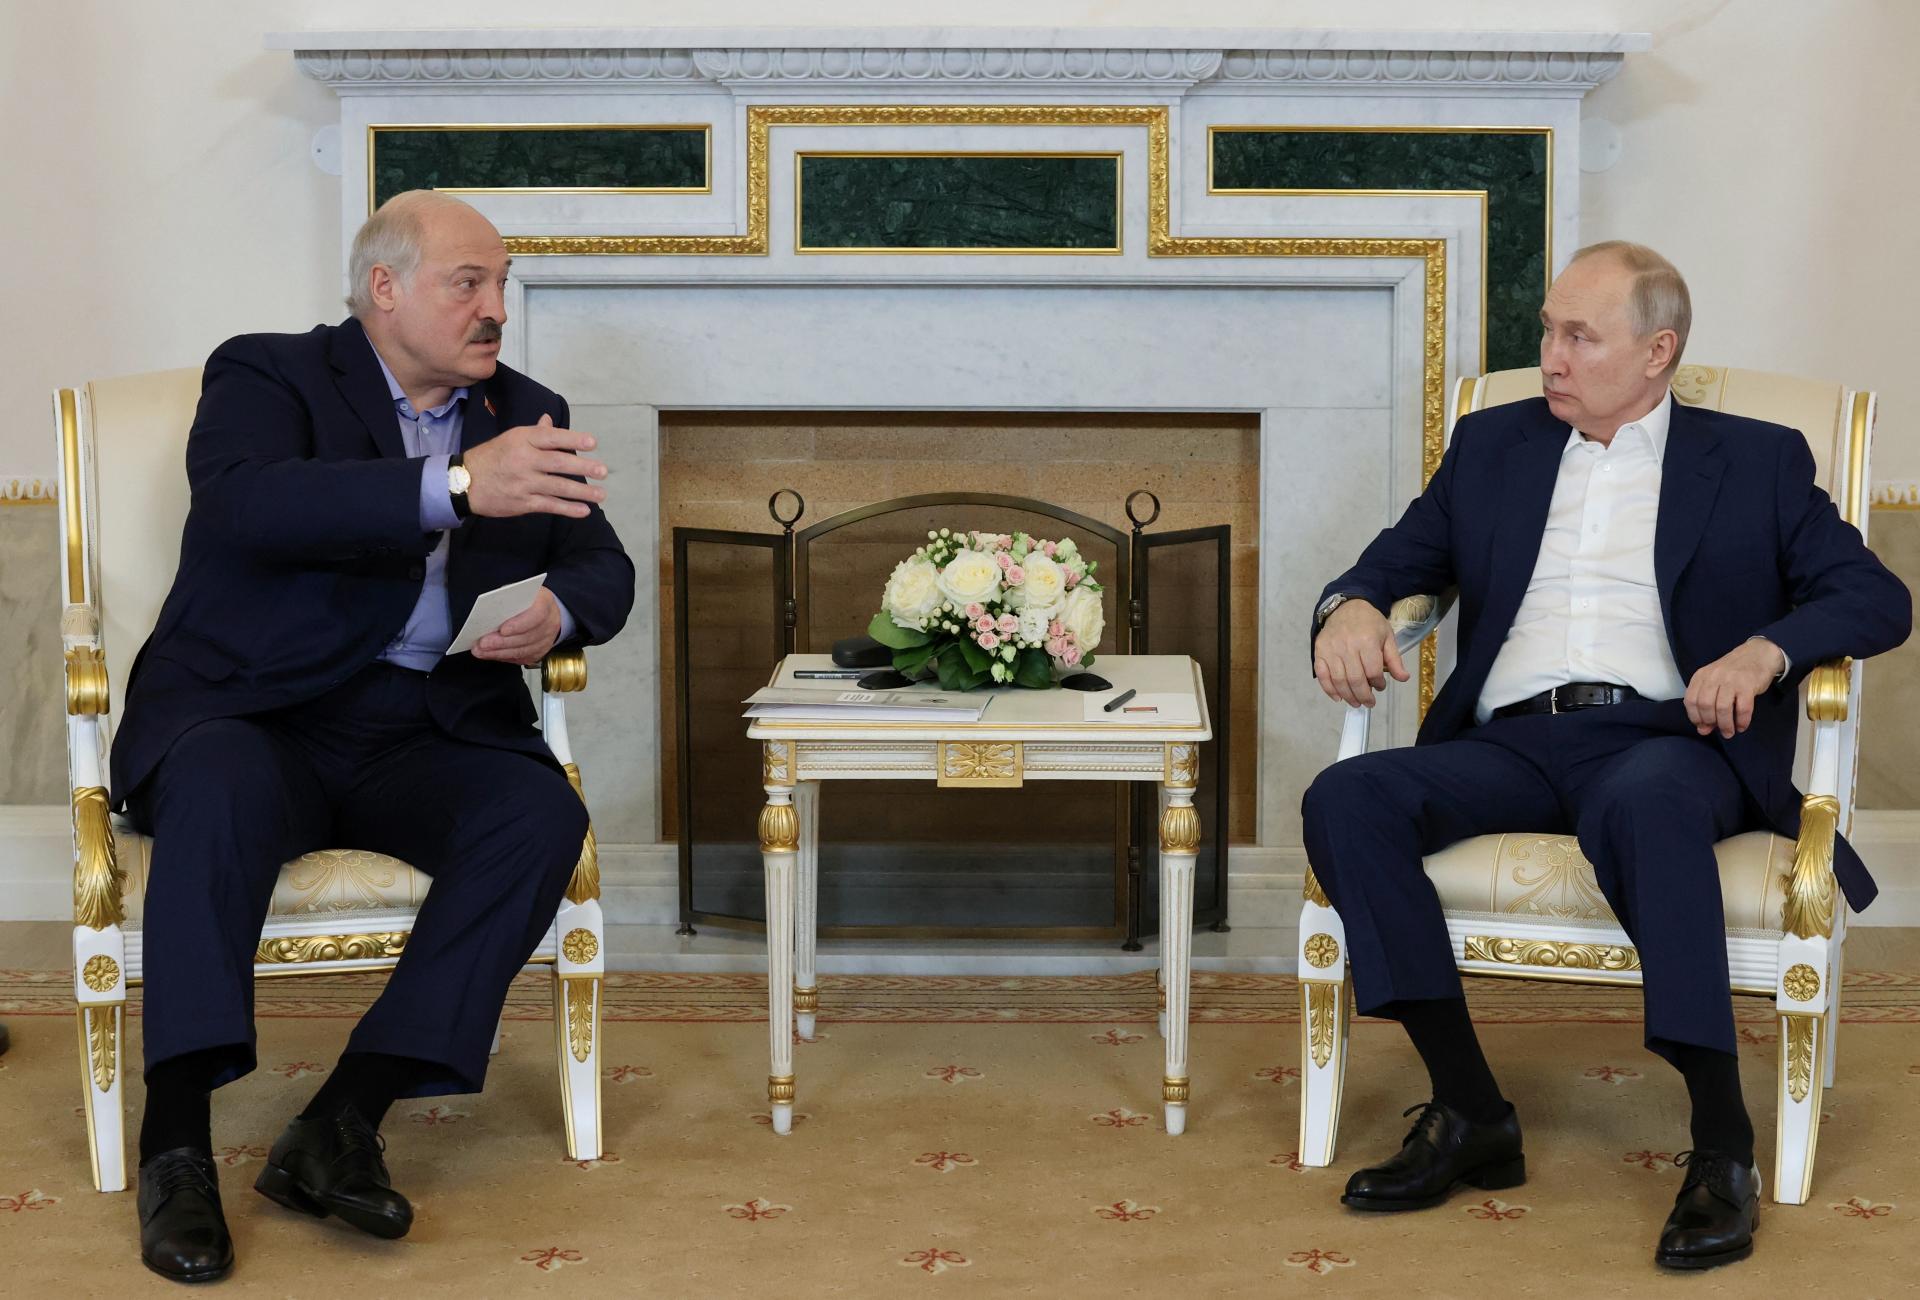 Putin sa stretol s Lukašenkom: Ukrajinská protiofenzíva zlyhala, vyhlásil ruský prezident